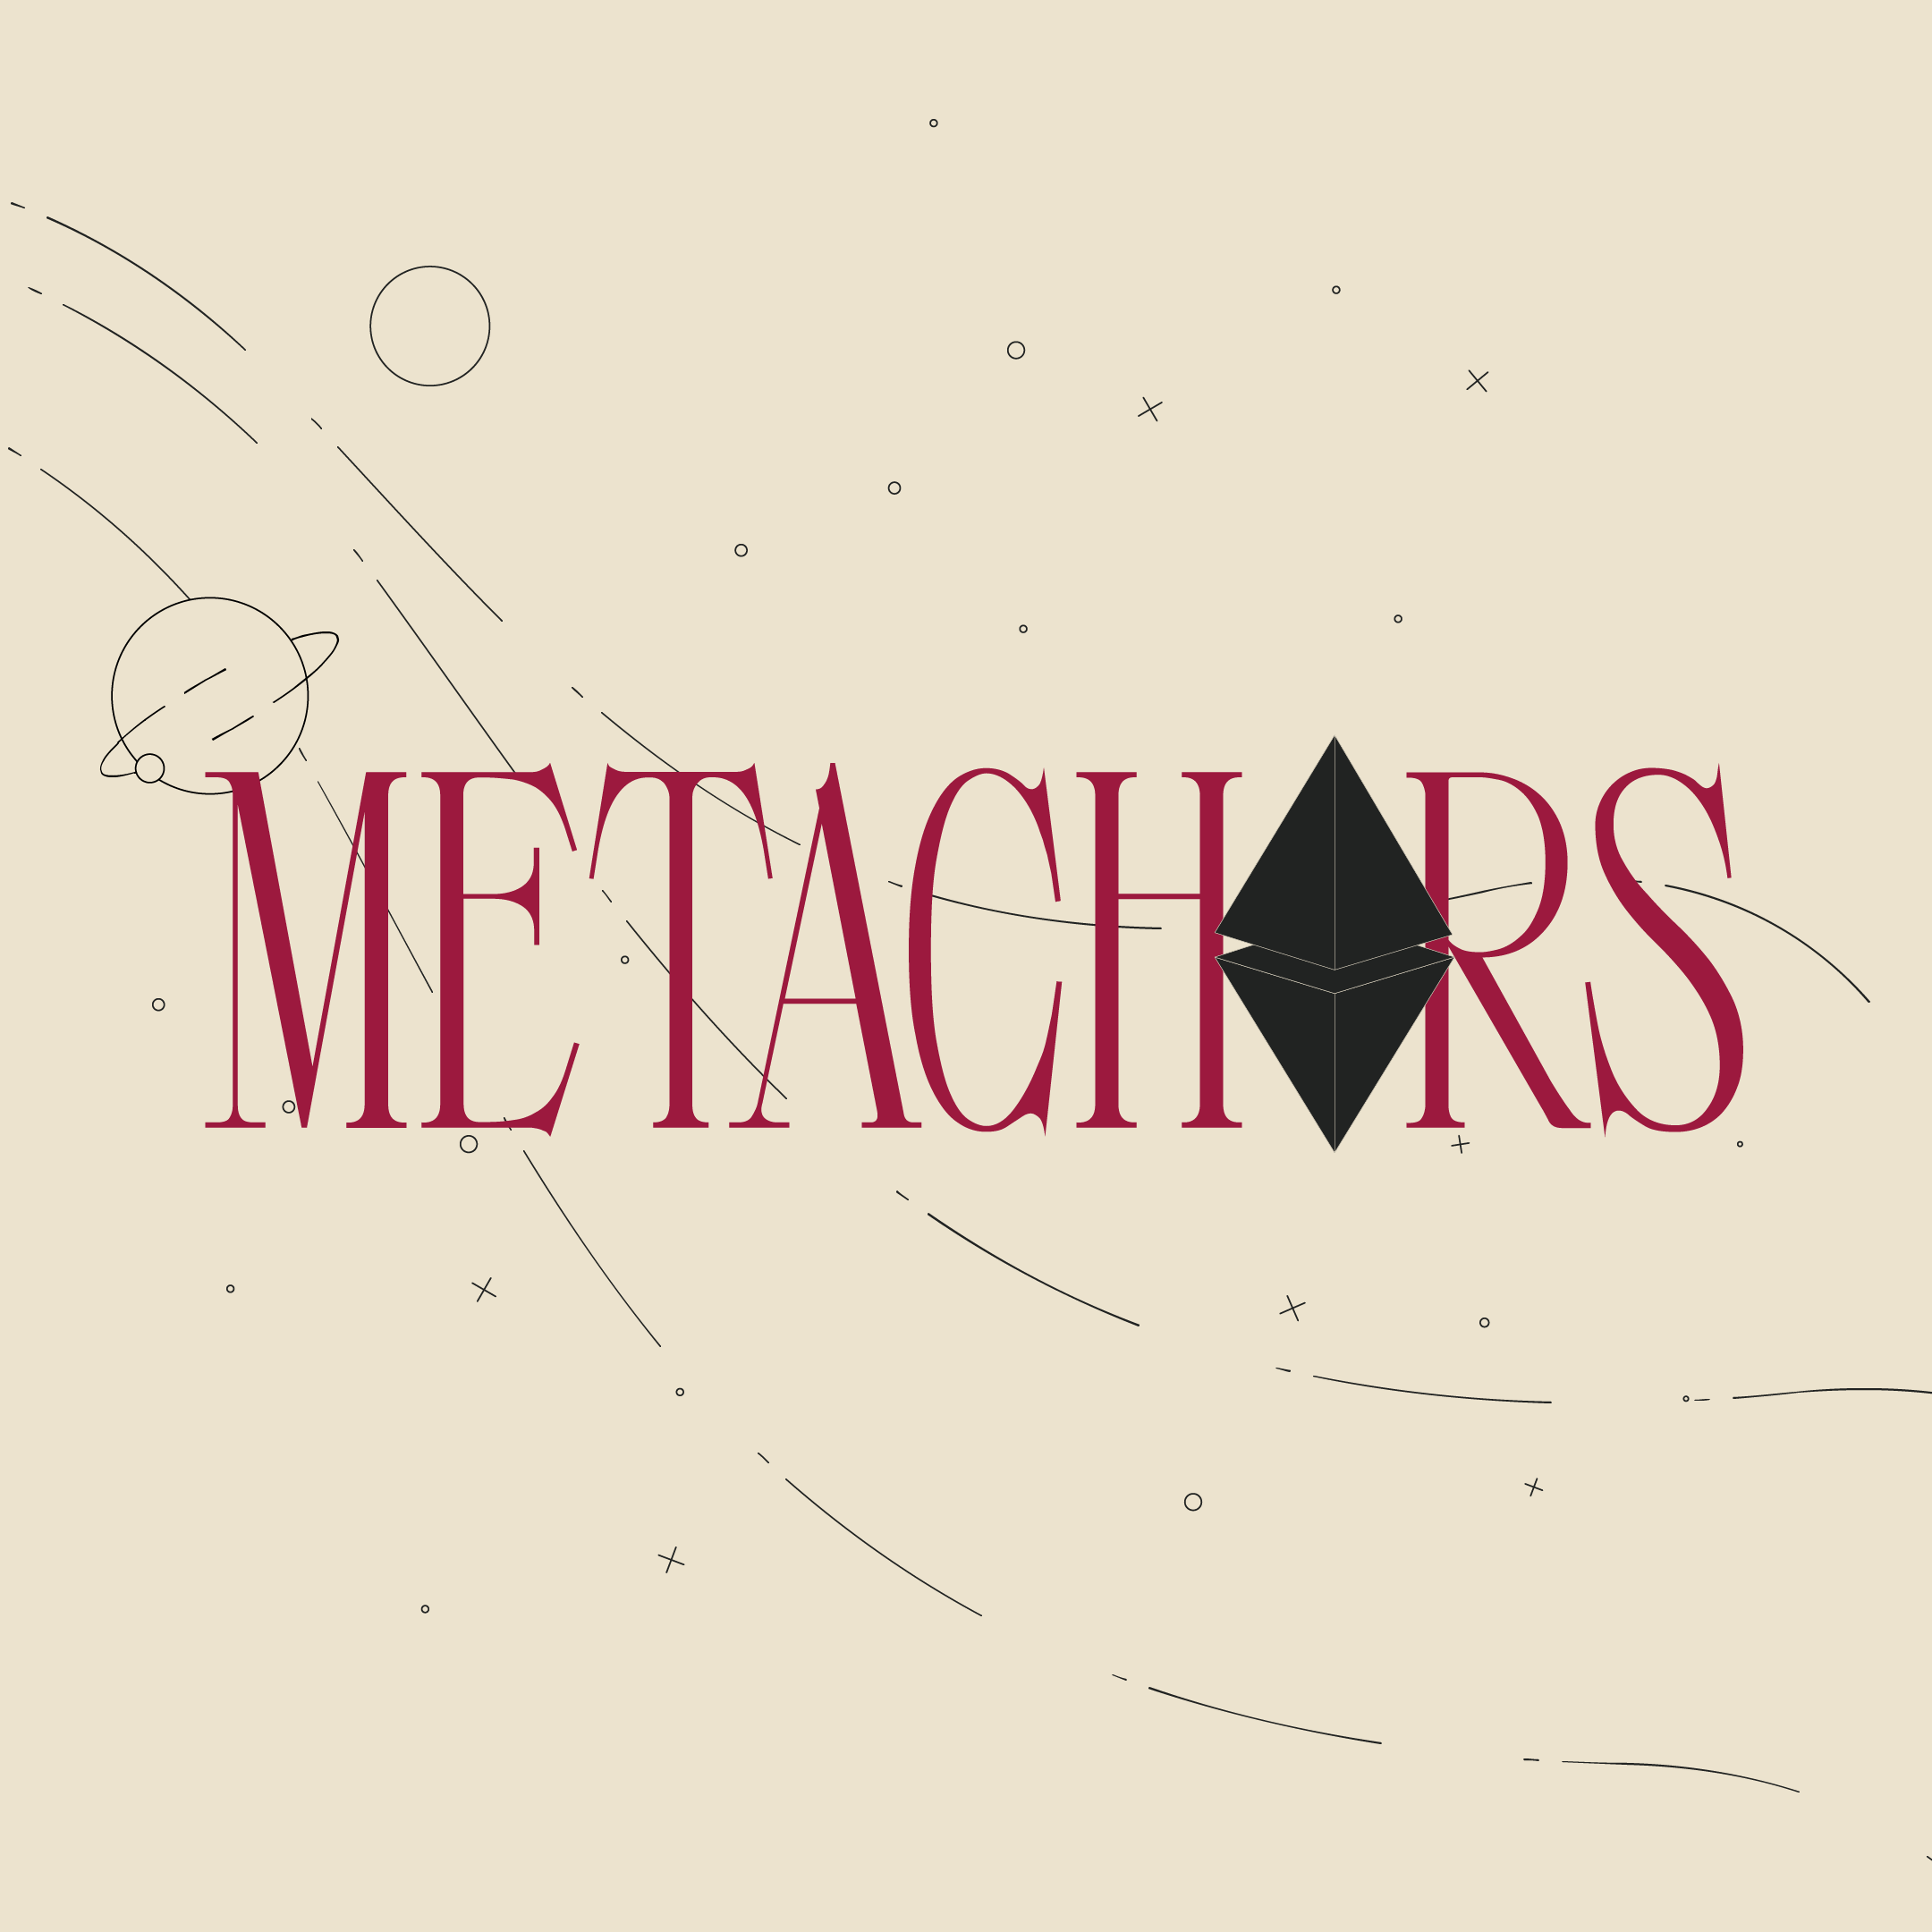 Metachors